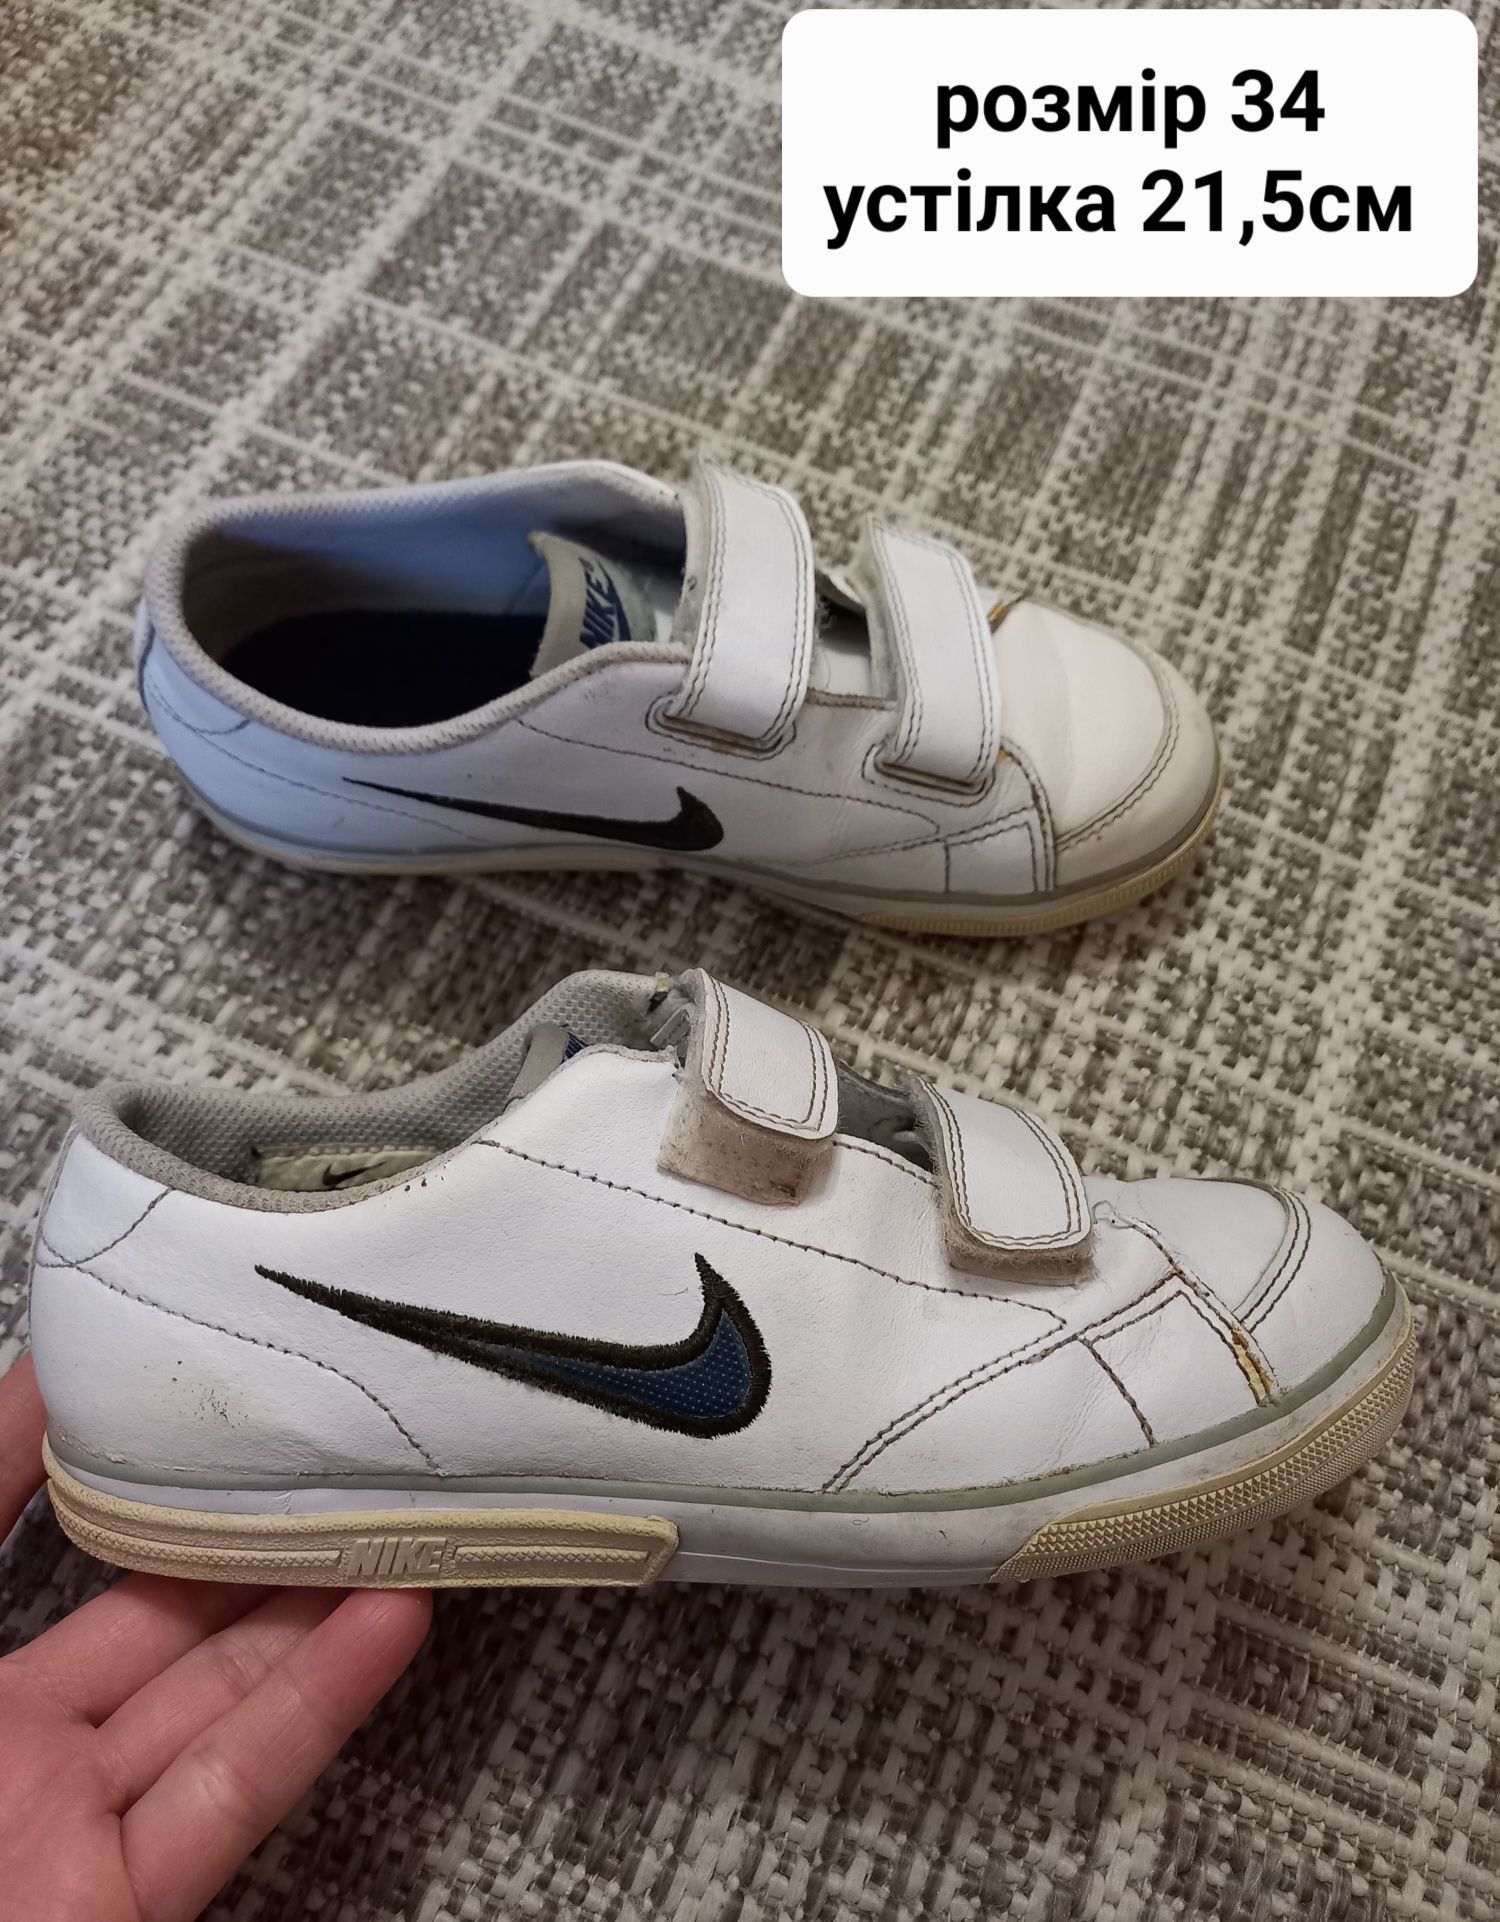 Красовки/кросівки/босоніжки на хлопчика Nike, Adidas 34-33 розмір